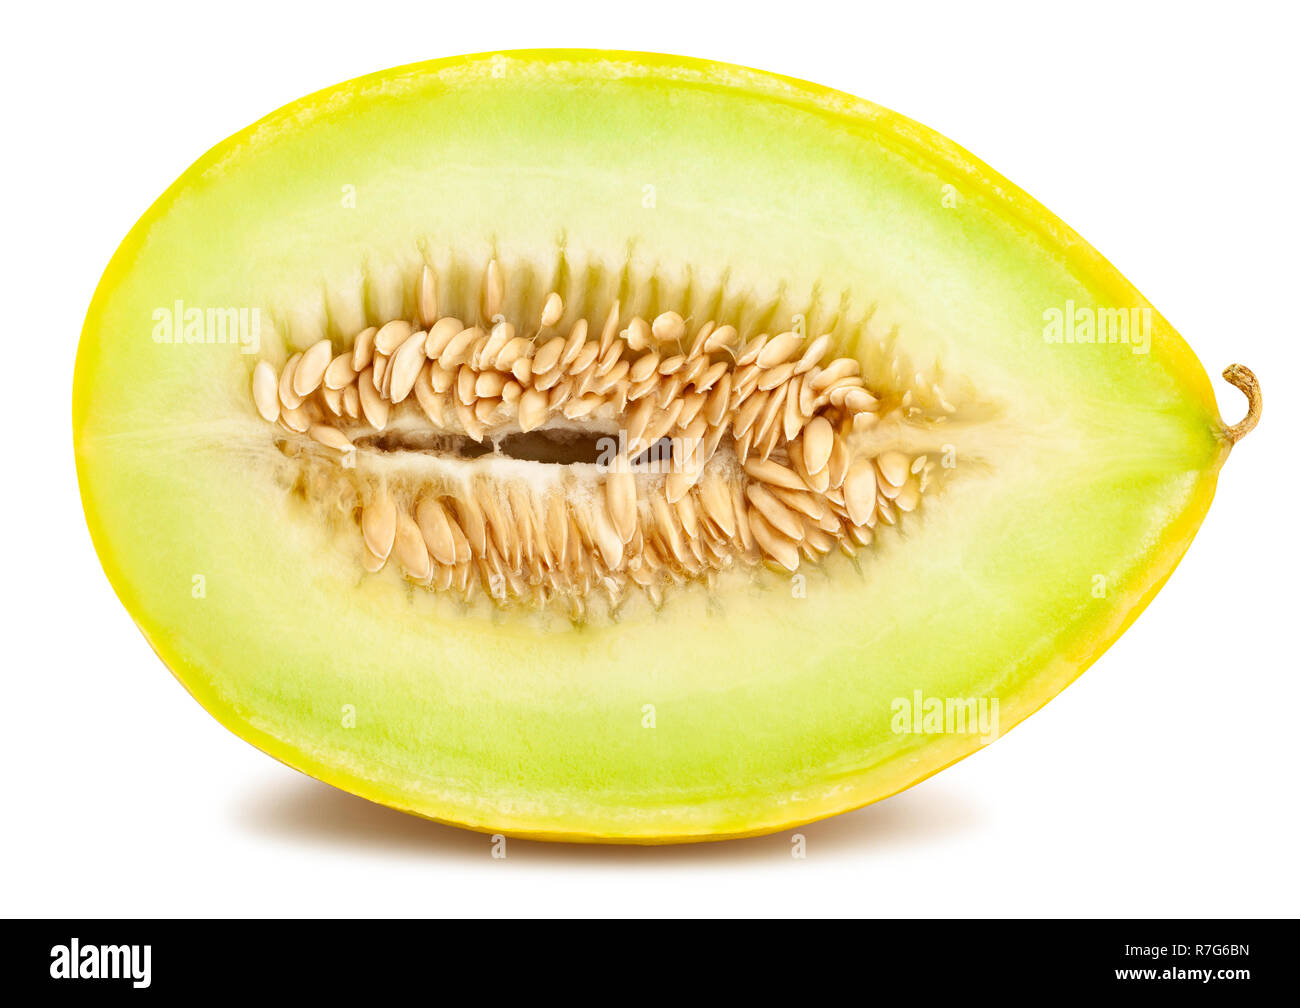 ARCHAEOLOGY OF FRUITS & VEGETABLES - Honeydew Melon (Casaba